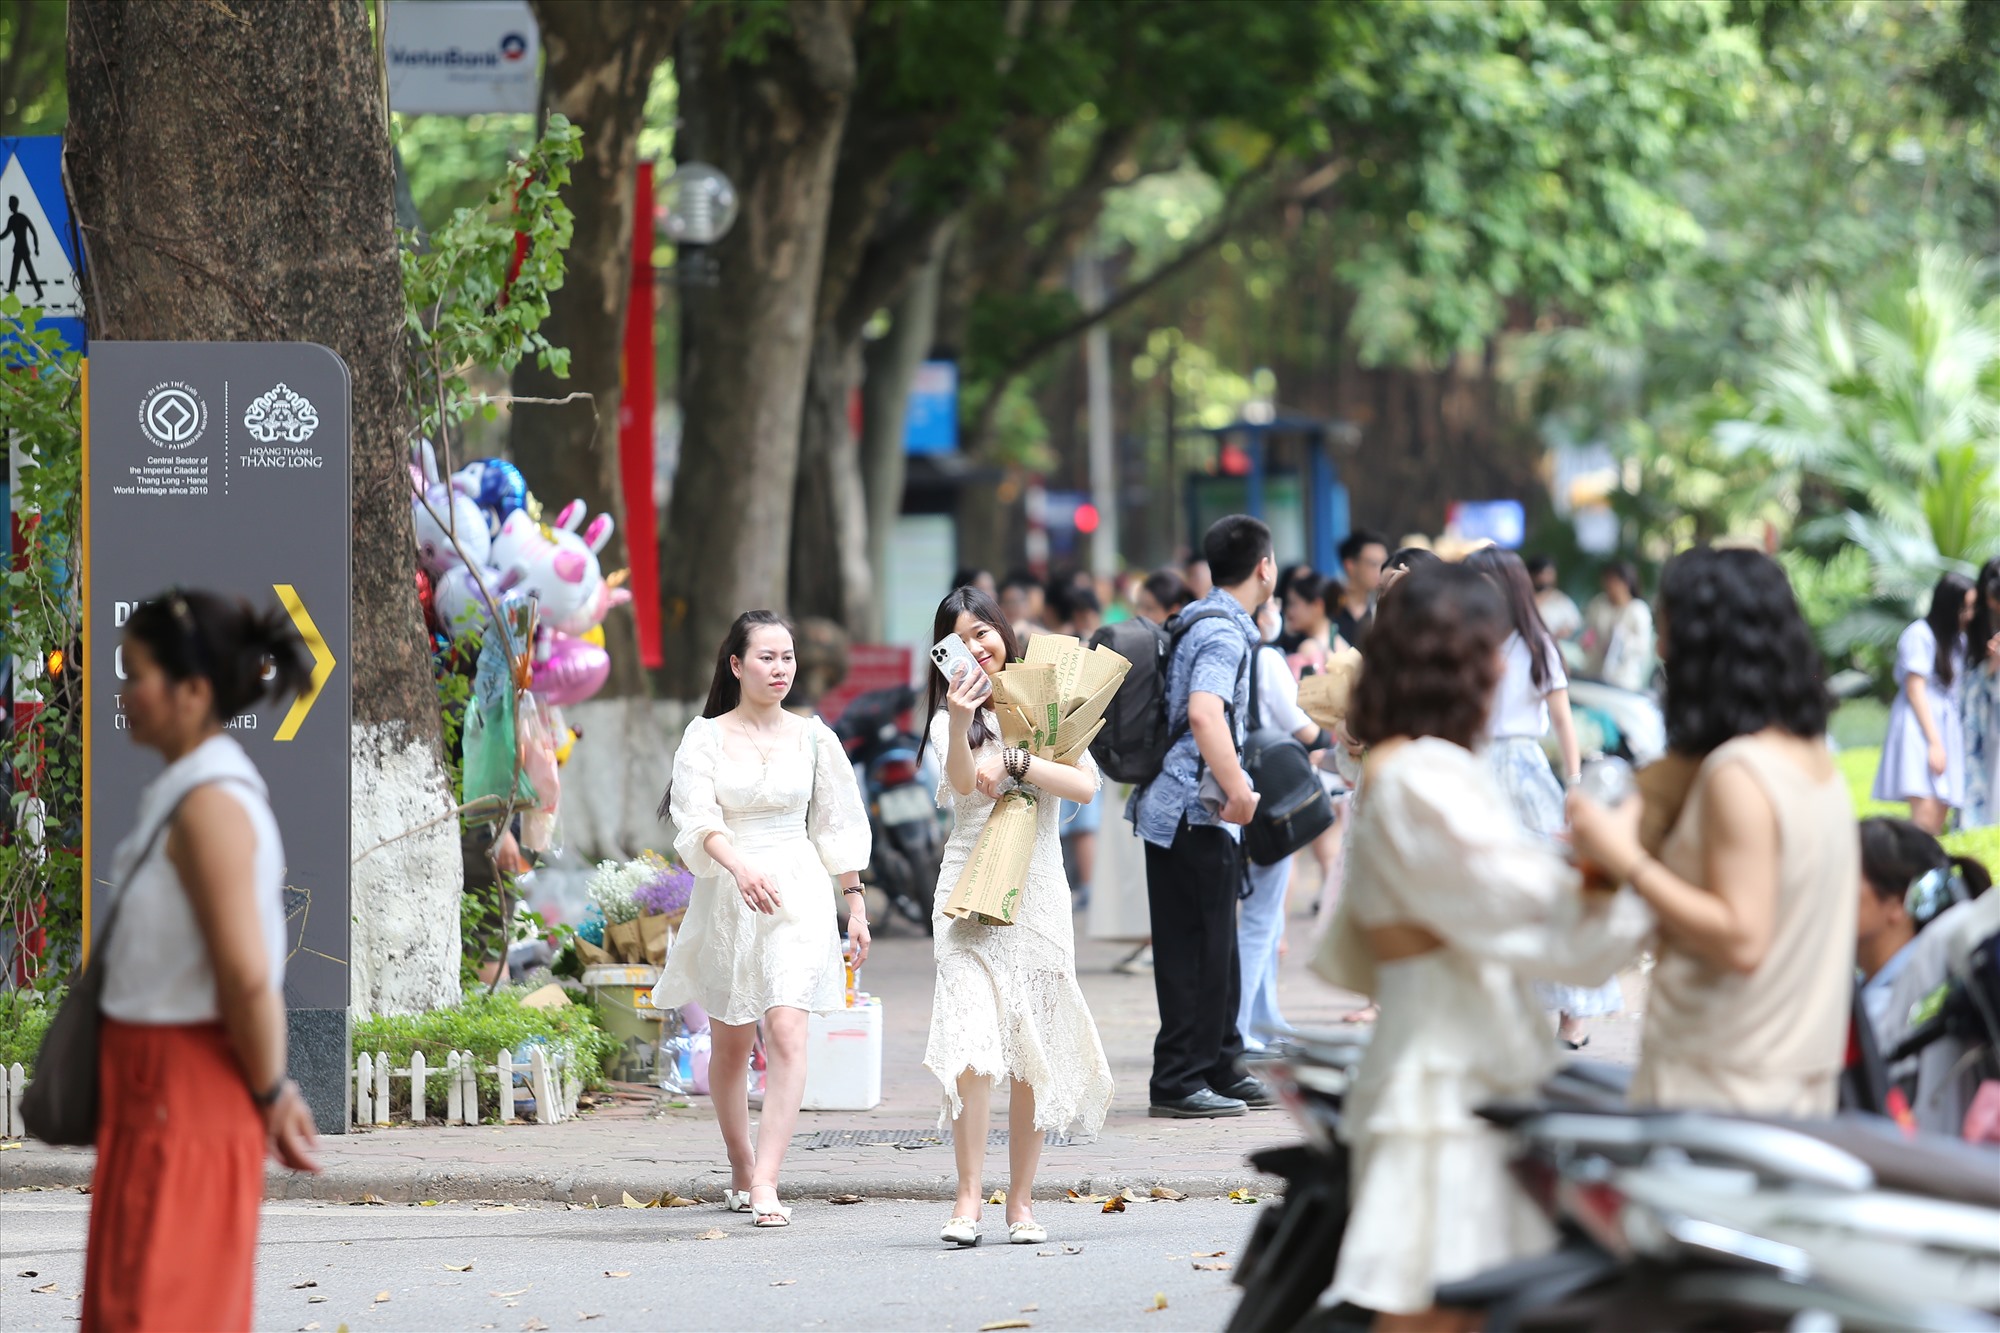 Con phố Phan Đình Phùng tấp nập người đến chụp ảnh trong ngày đầu nghỉ lễ. Ảnh: Vĩnh Hoàng